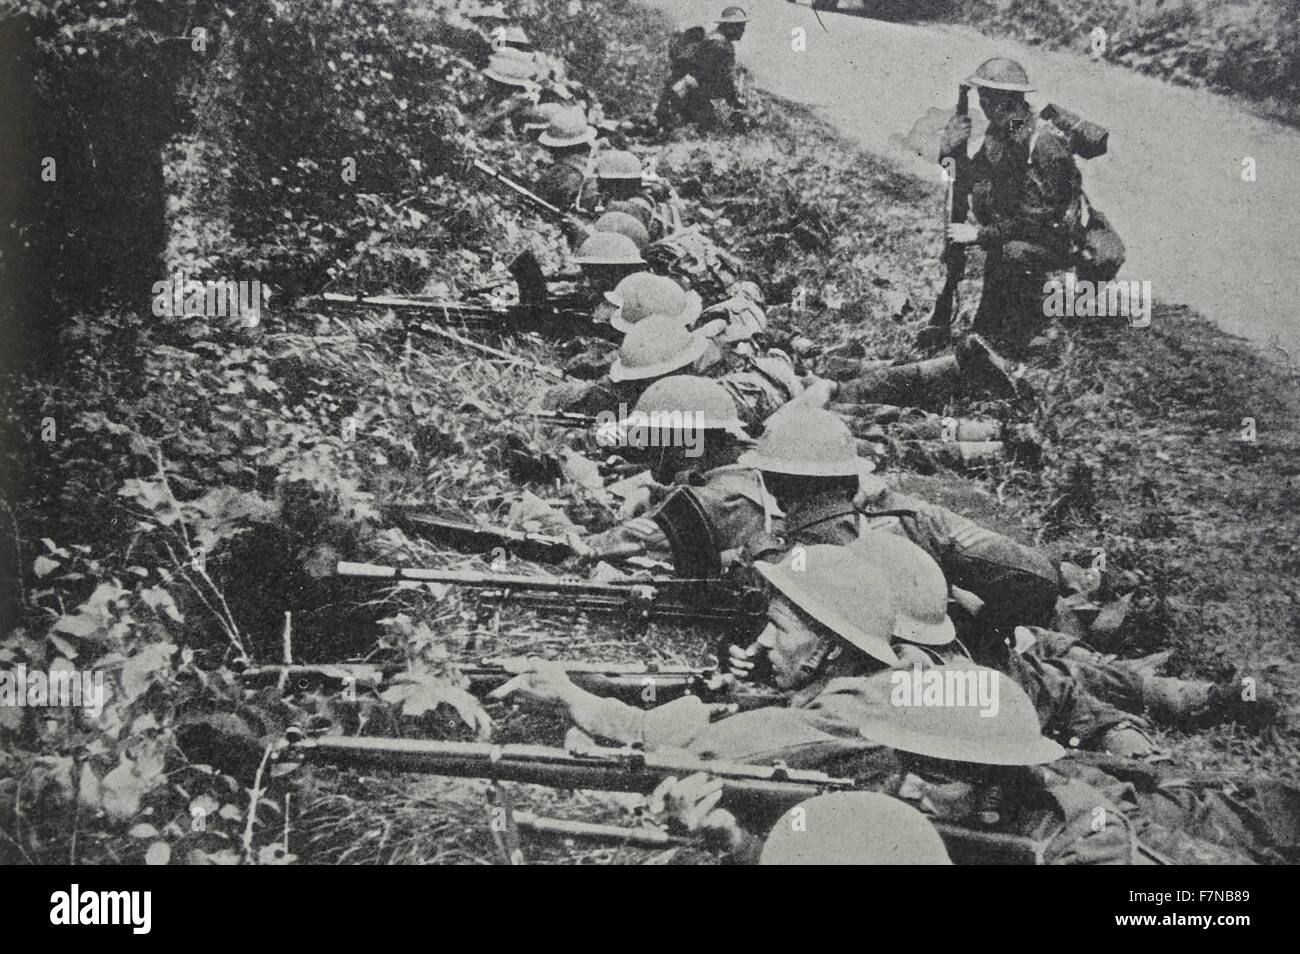 Fotografia di soldati prendere posizione sul ciglio della strada. Datata 1940 Foto Stock